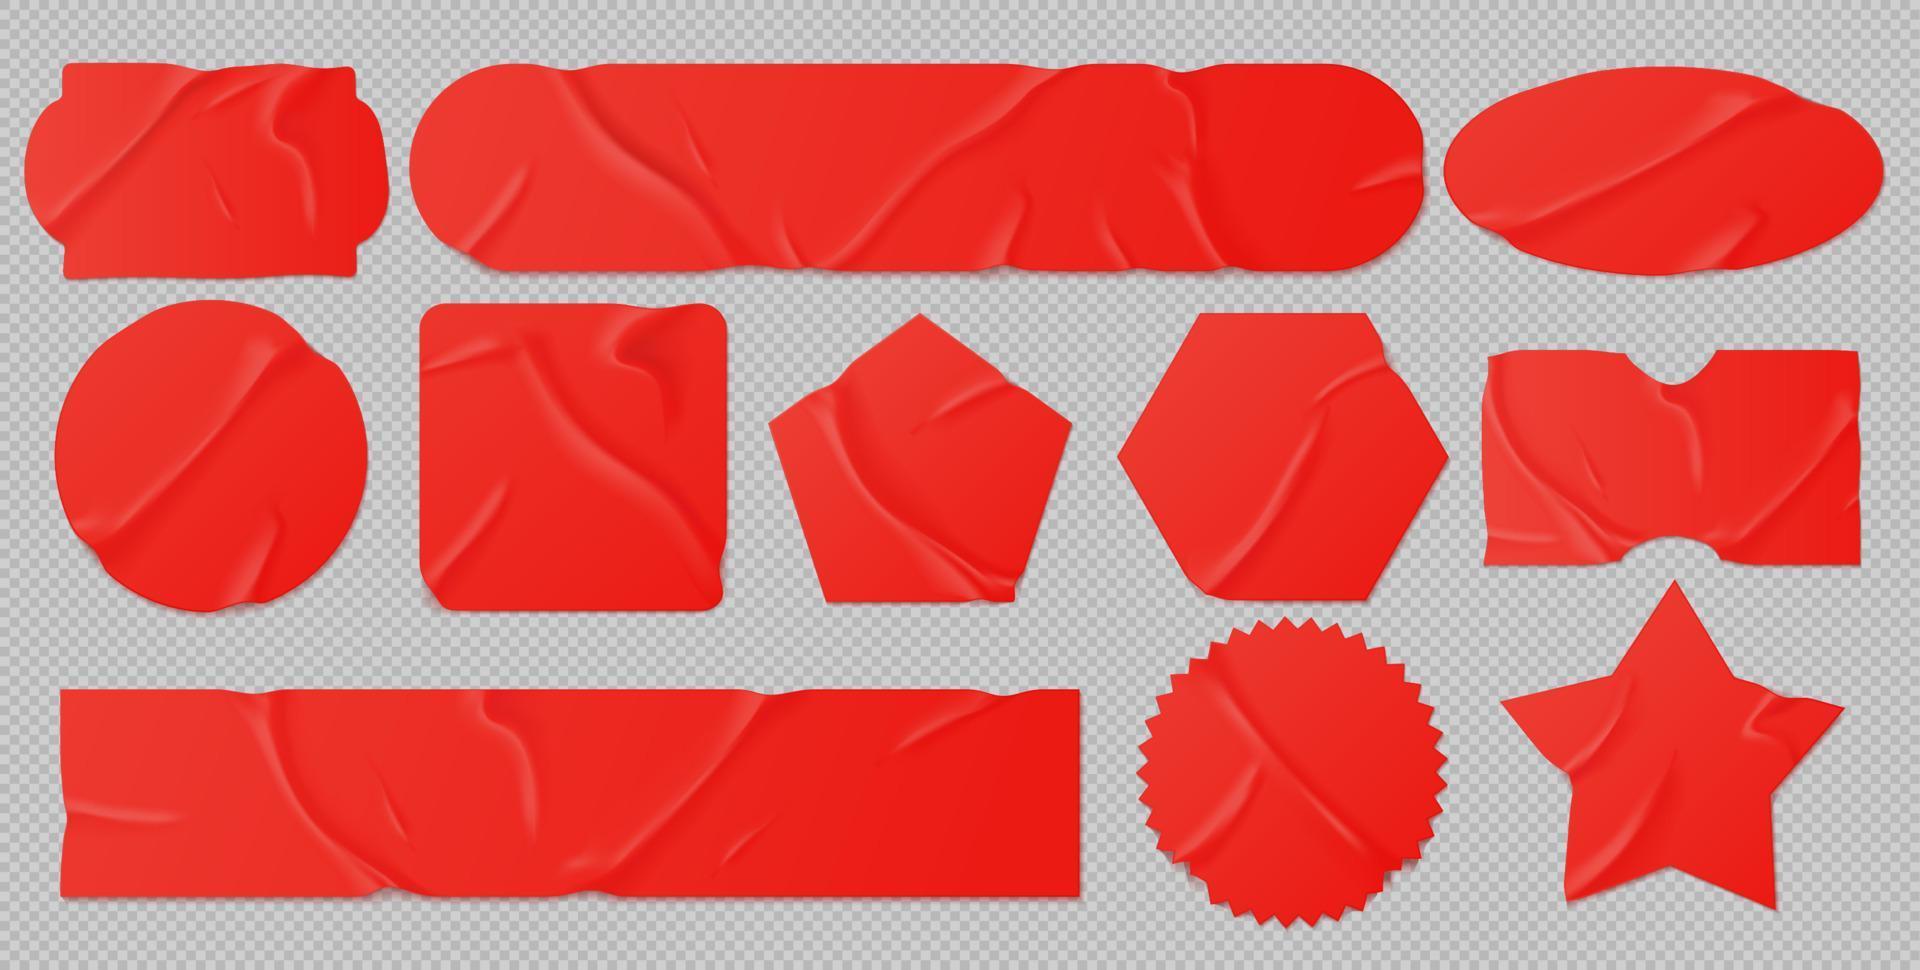 adesivos colados vermelhos, maquete de patches de papel amassado vetor